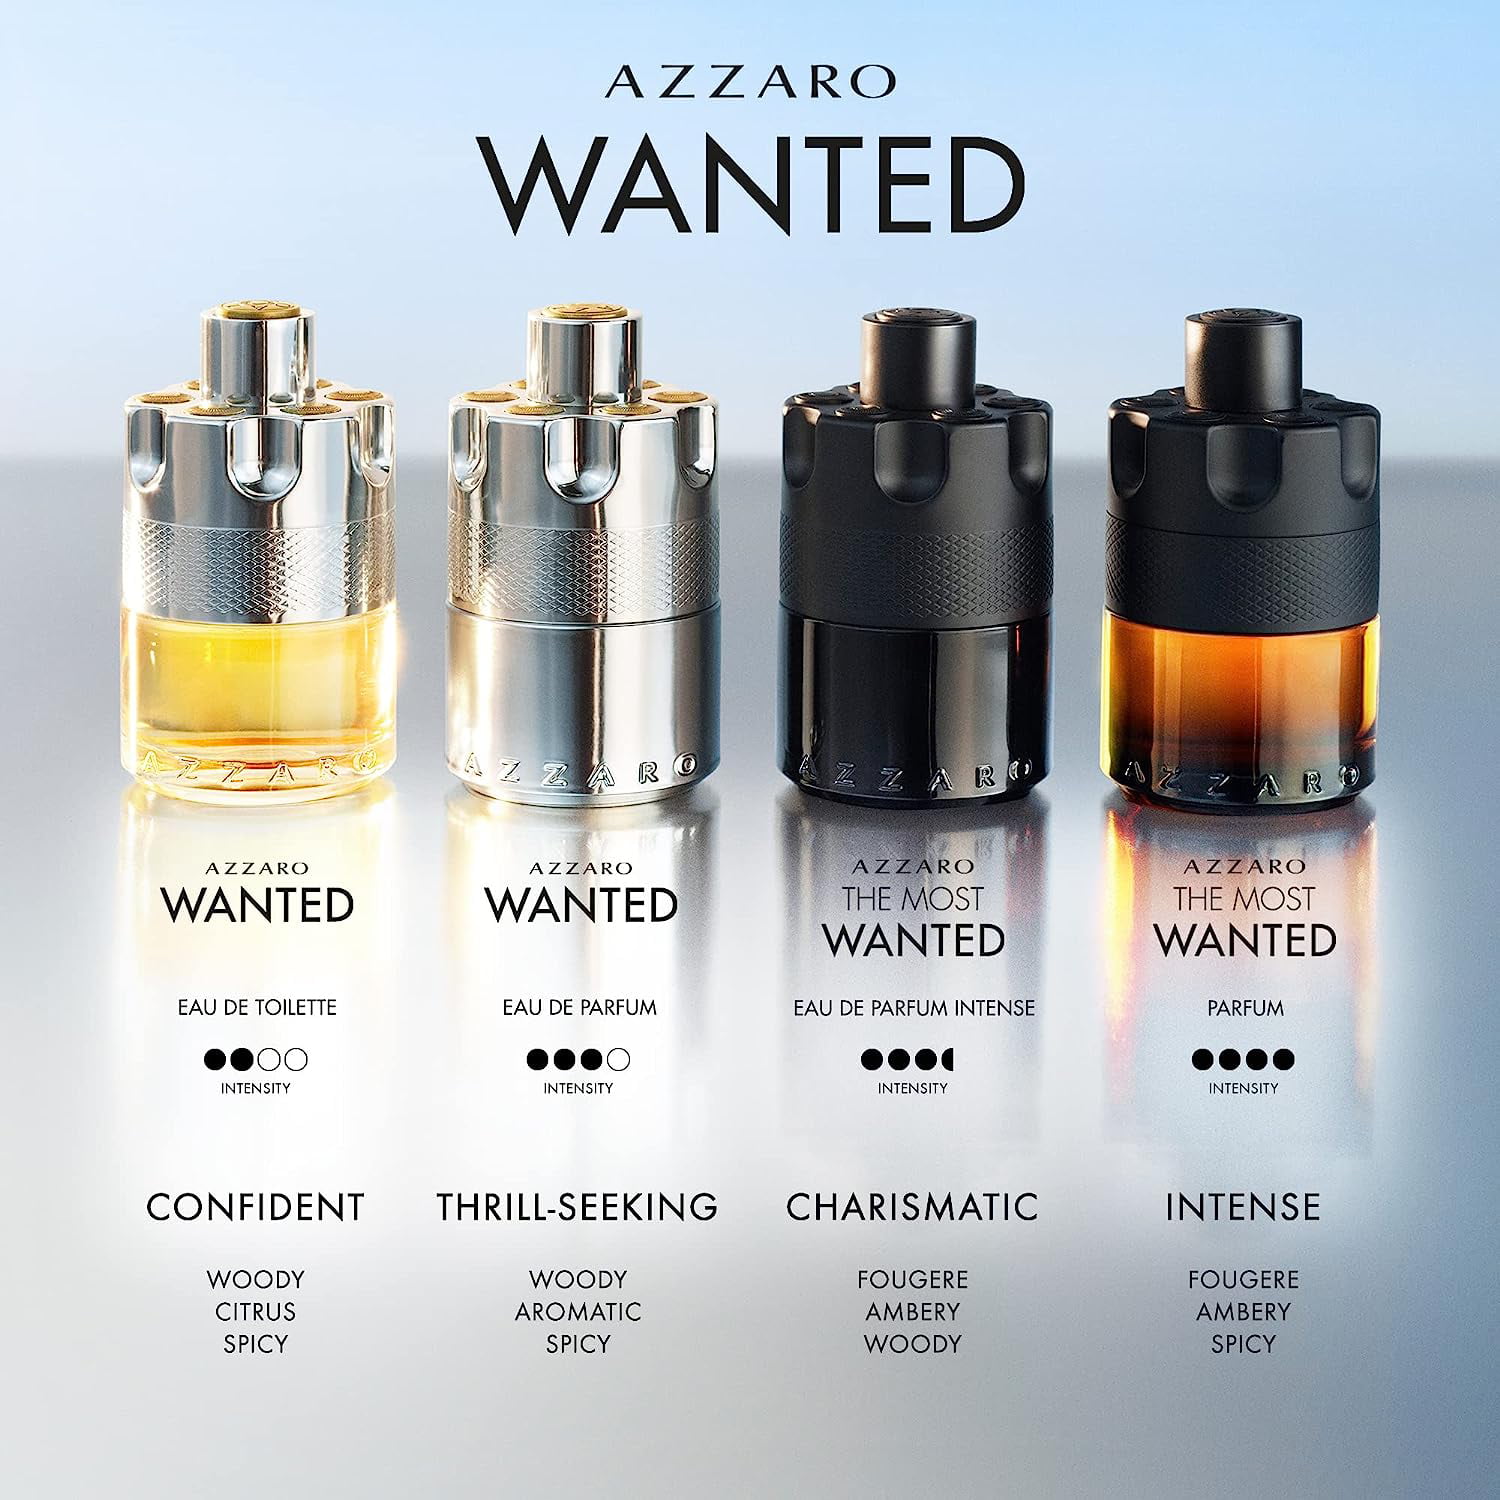 Azzaro Wanted by Loris Azzaro for Men 3.4 oz Eau de Parfum Spray